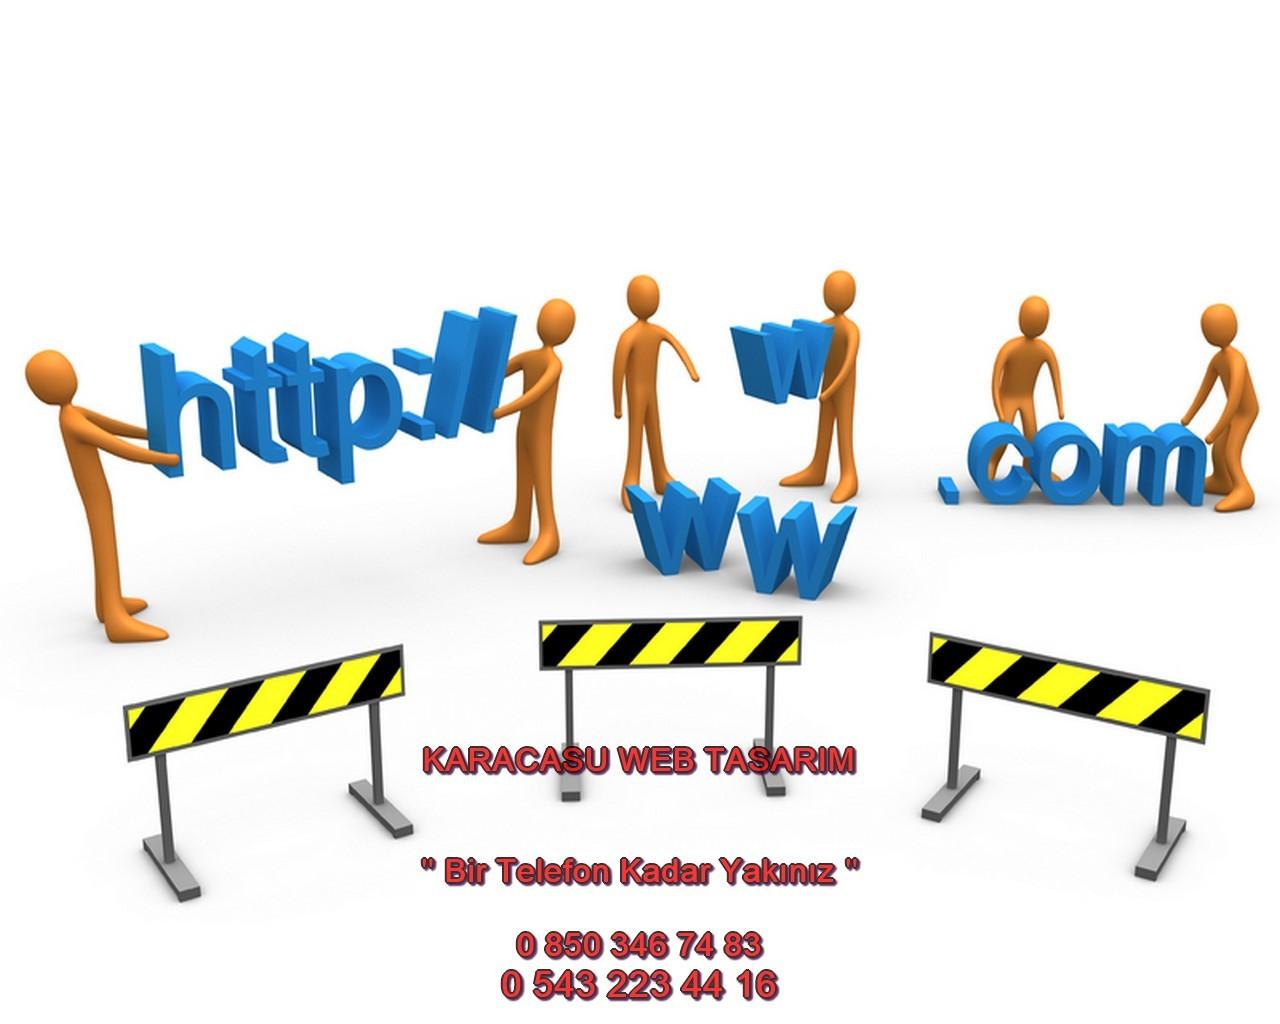 Karacasu Web Tasarım